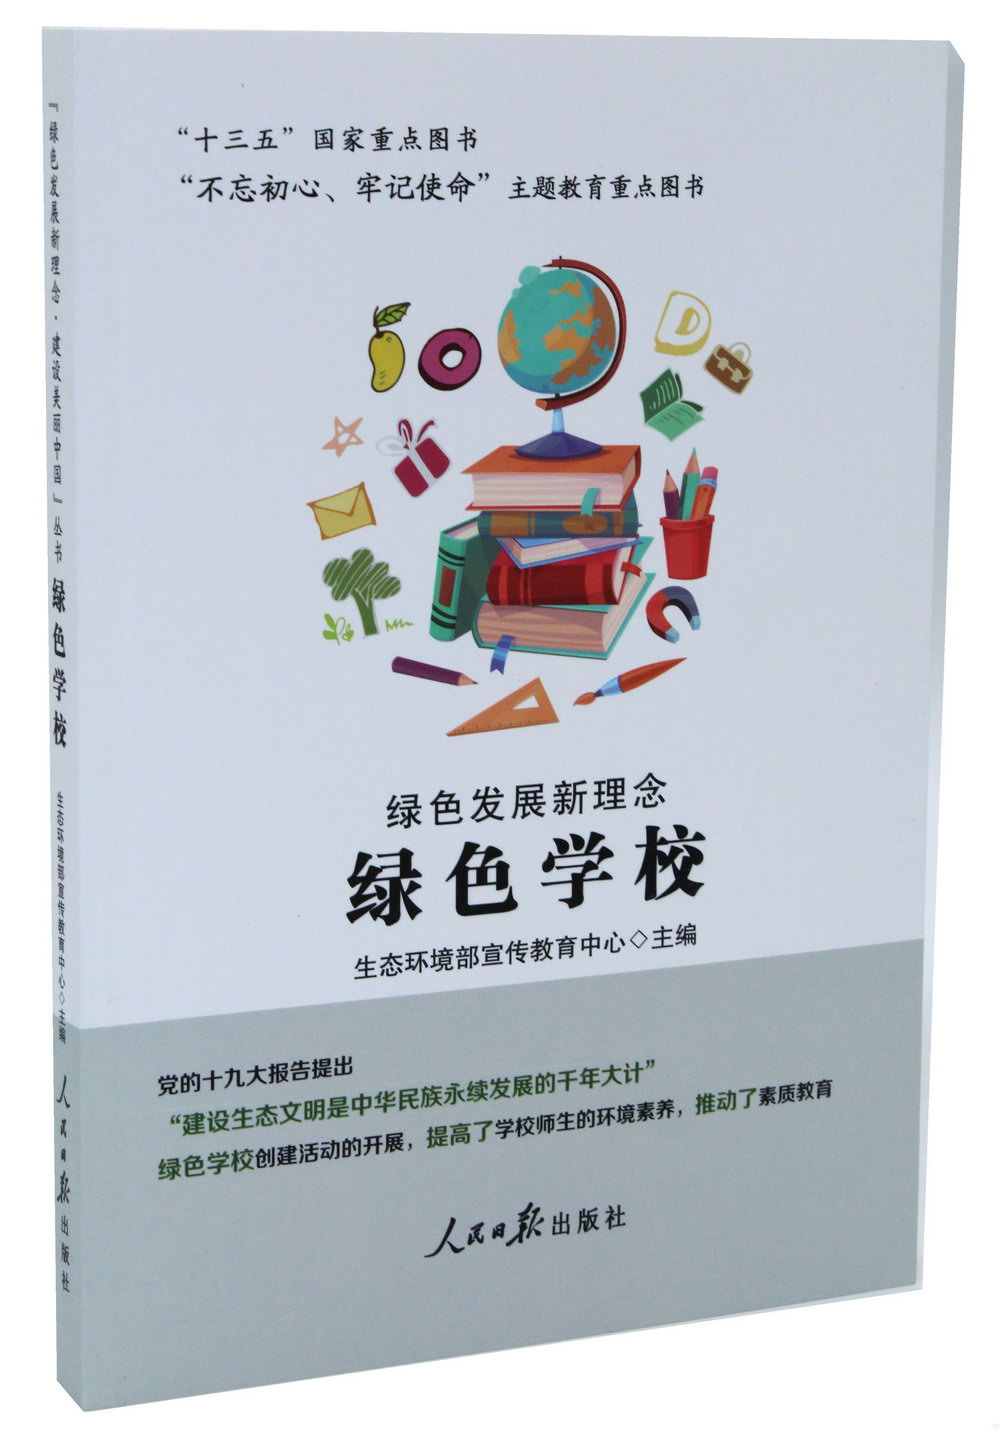 「綠色發展新理念·建設美麗中國」叢書：綠色學校